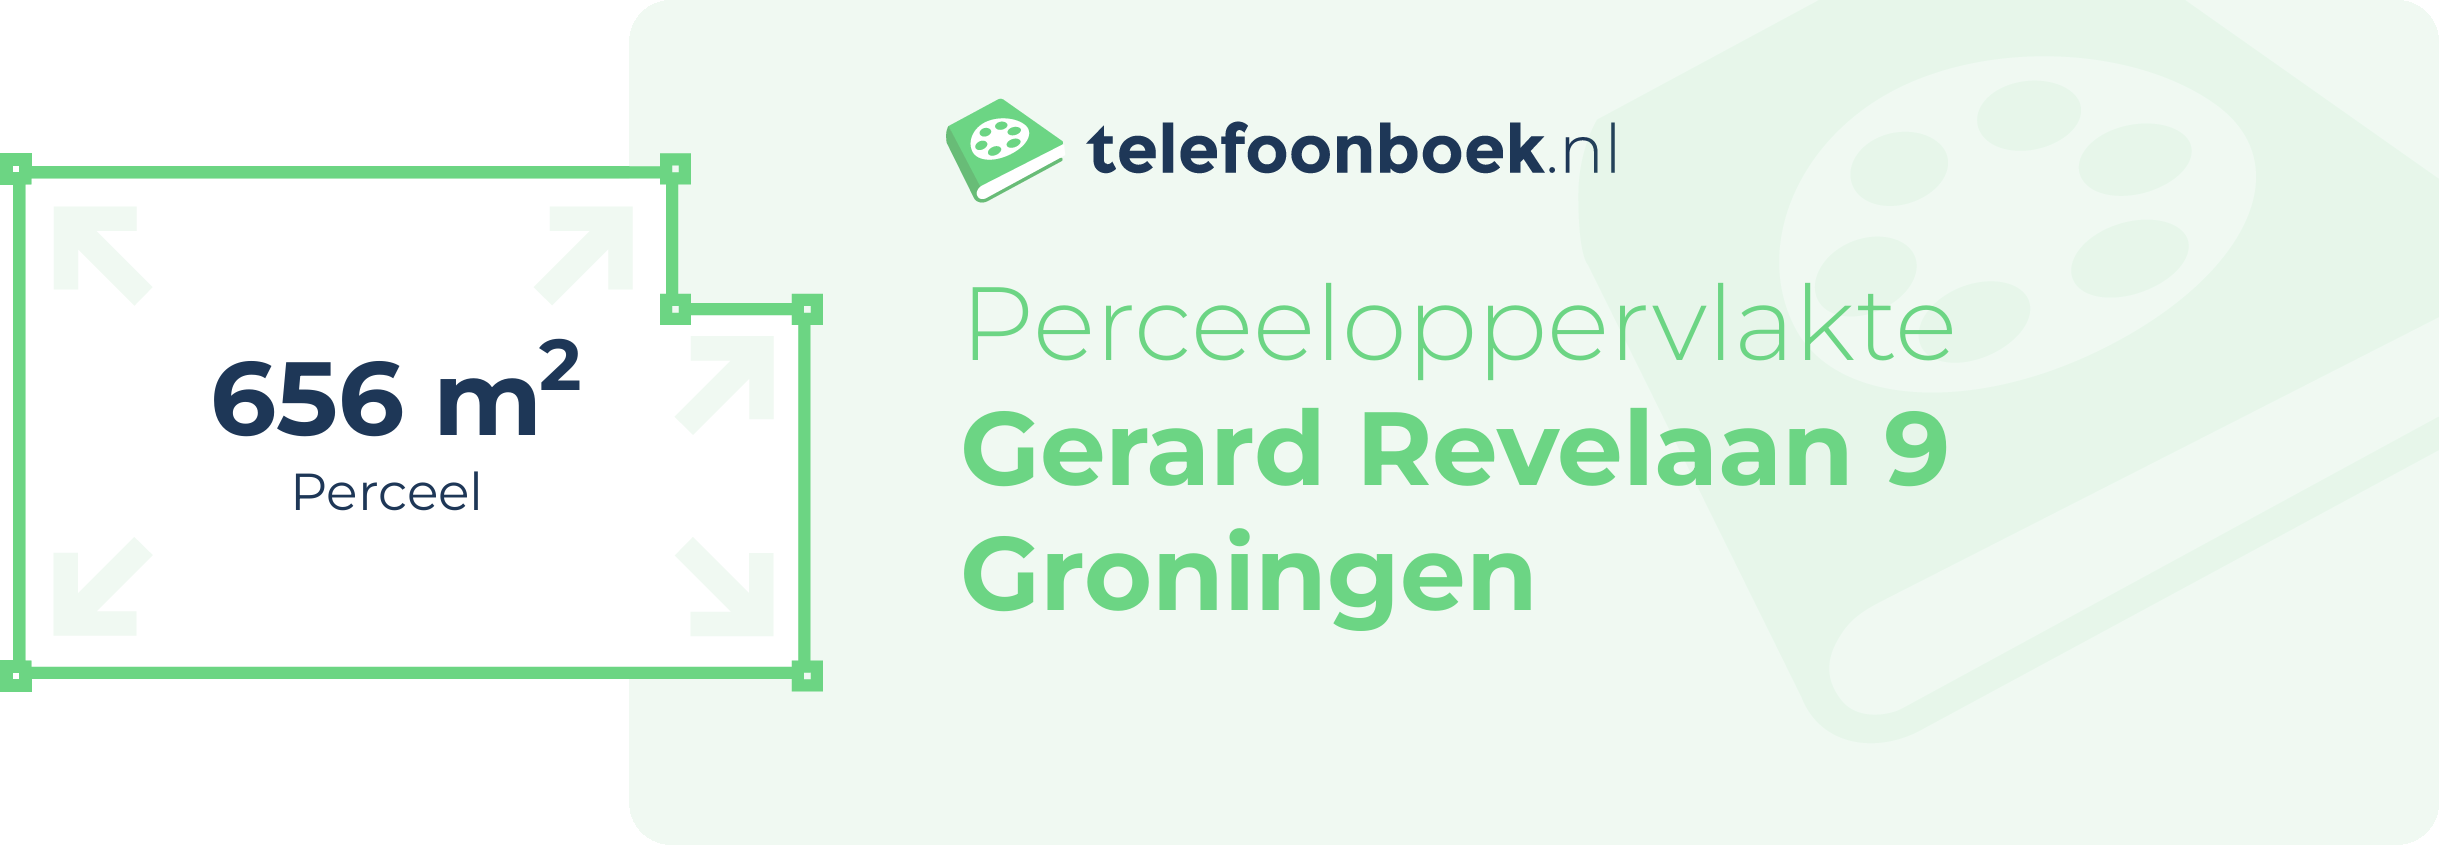 Perceeloppervlakte Gerard Revelaan 9 Groningen